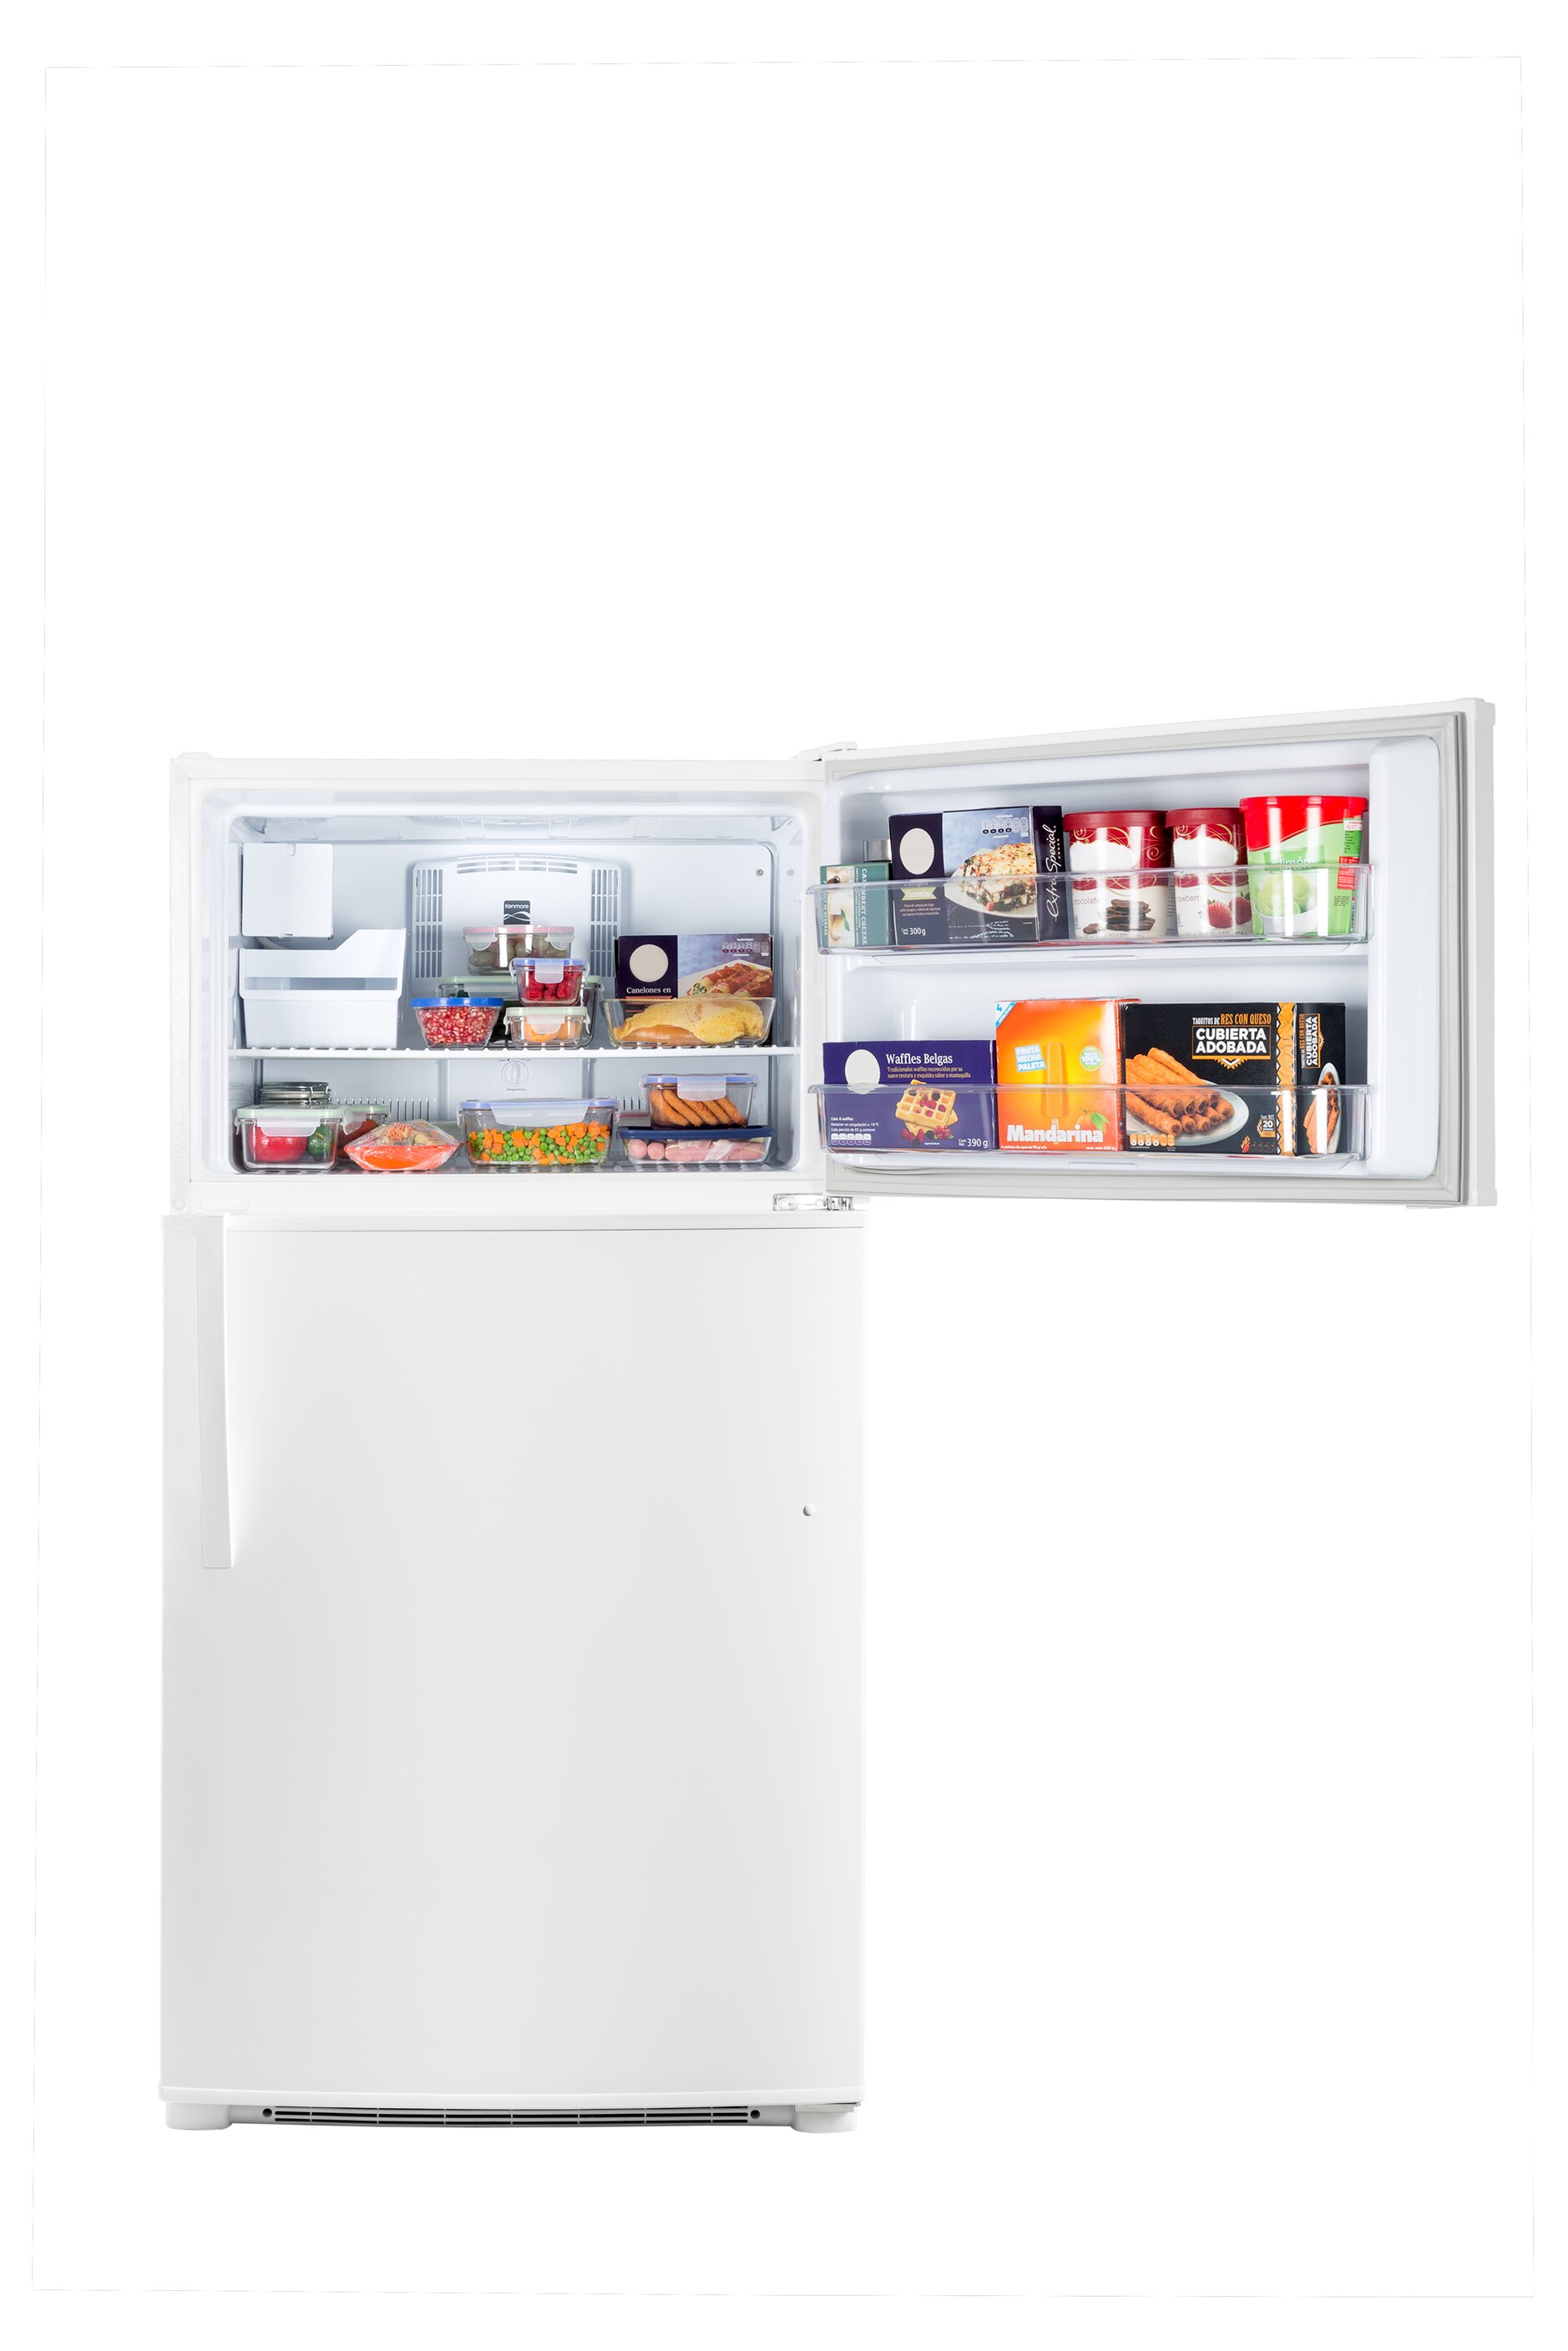 WR21X10079 GE Kenmore Refrigerator White Freezer Basket